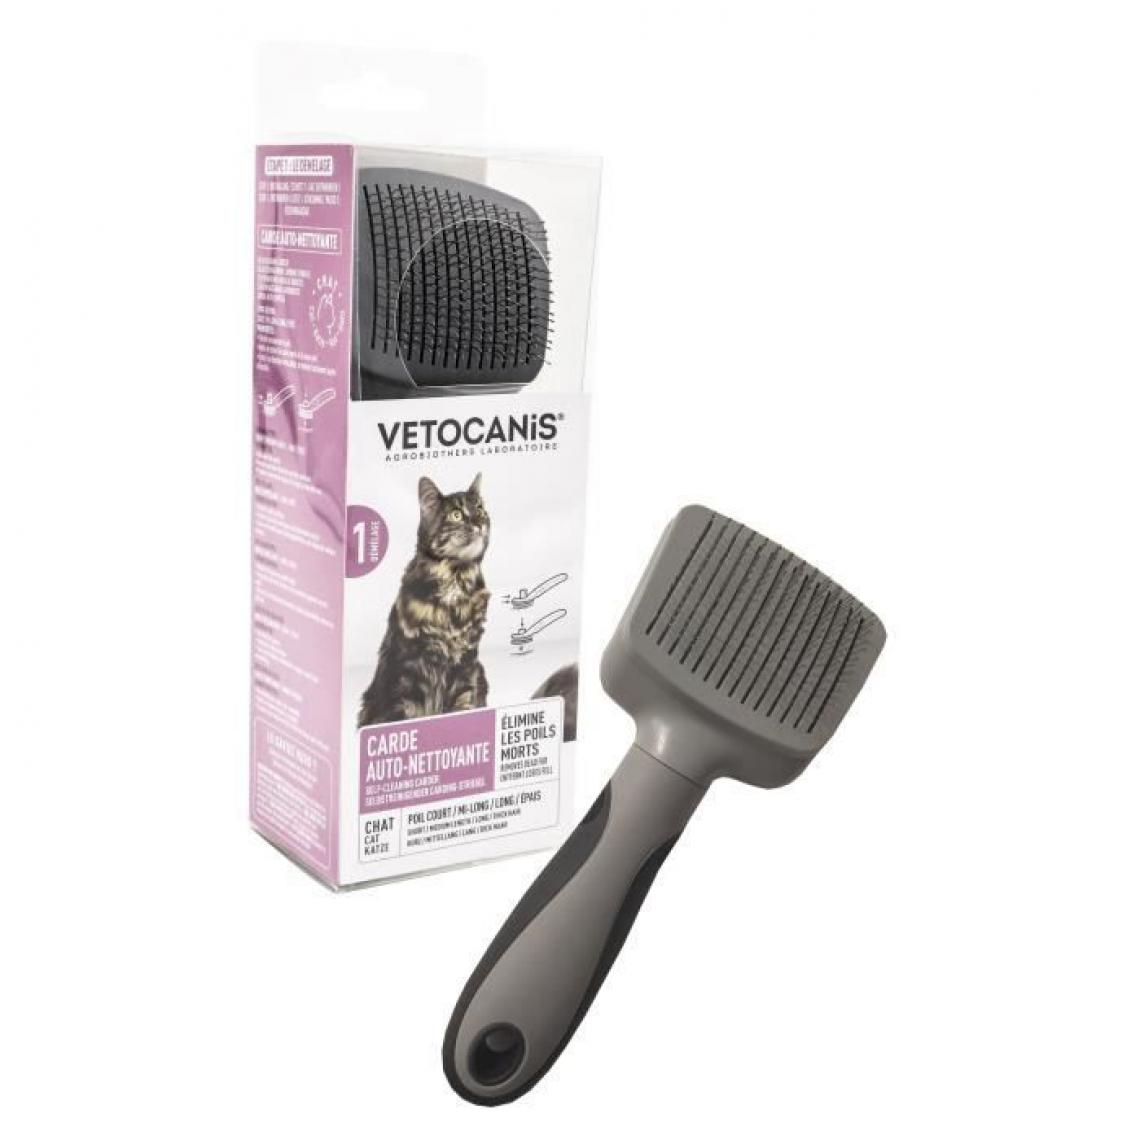 Vetocanis - VETOCANIS Brosse carde retractable et autonettoyante - Pour éliminer les poils morts - Pour chat - Jouet pour chat